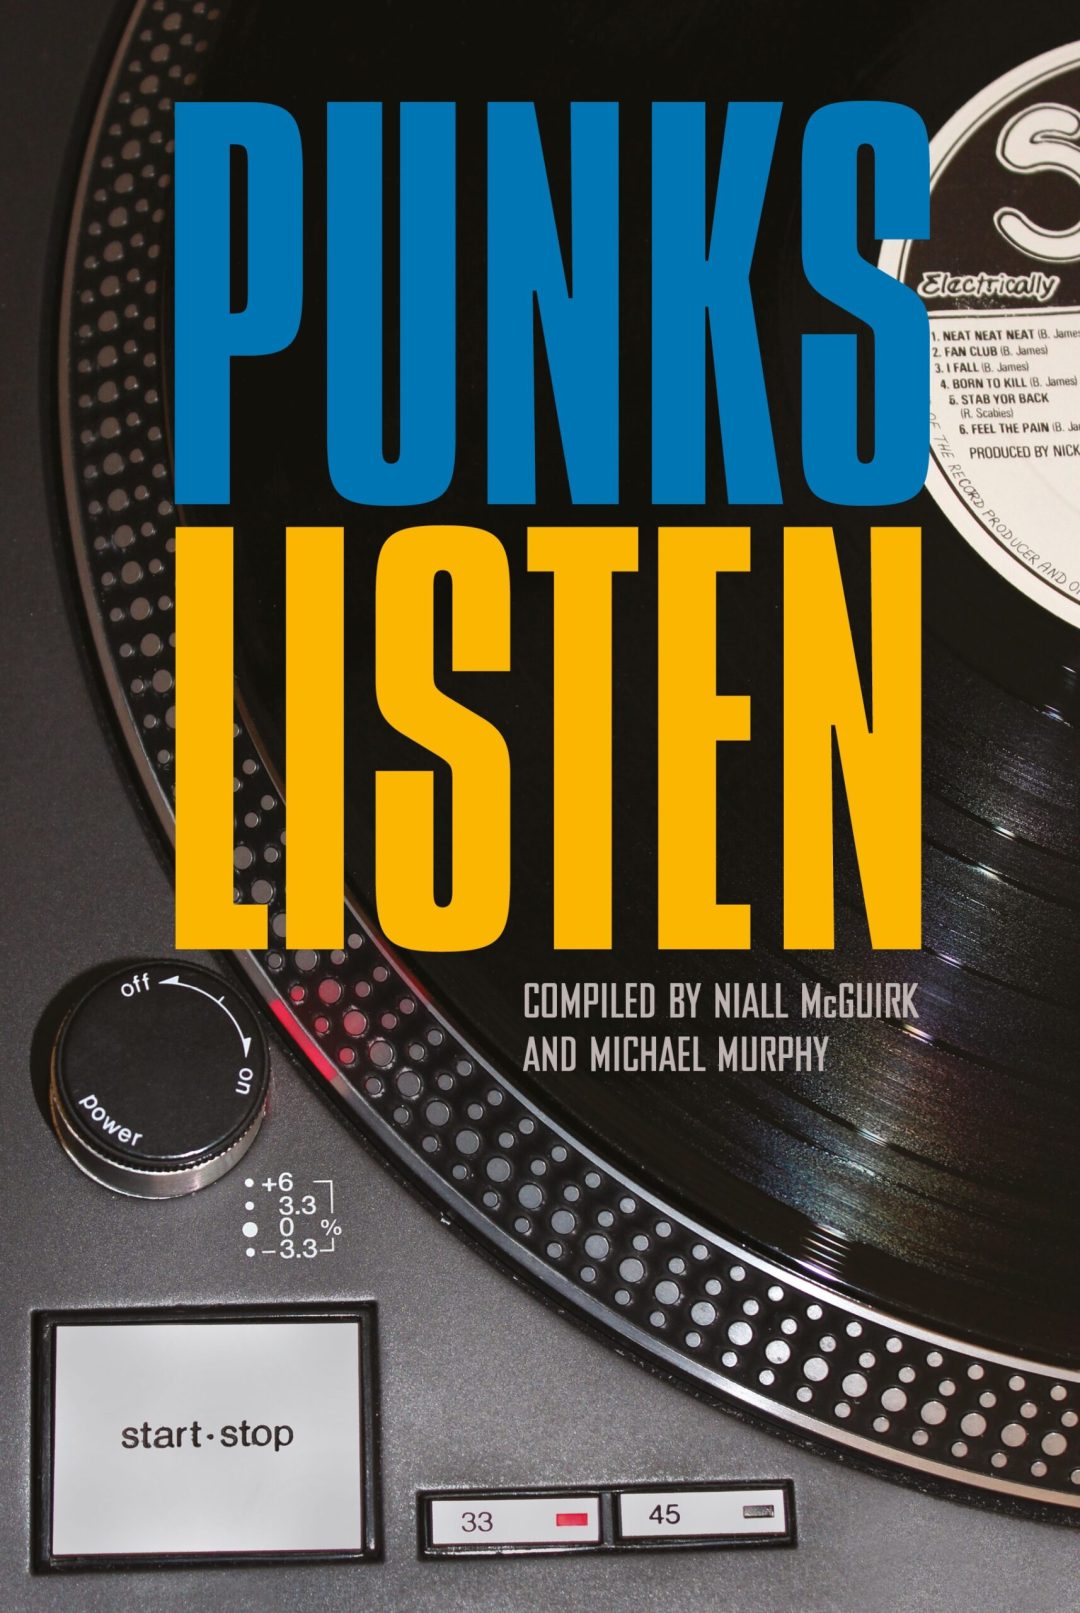 Punks Listen  book - cover art designed by Russ Bestley